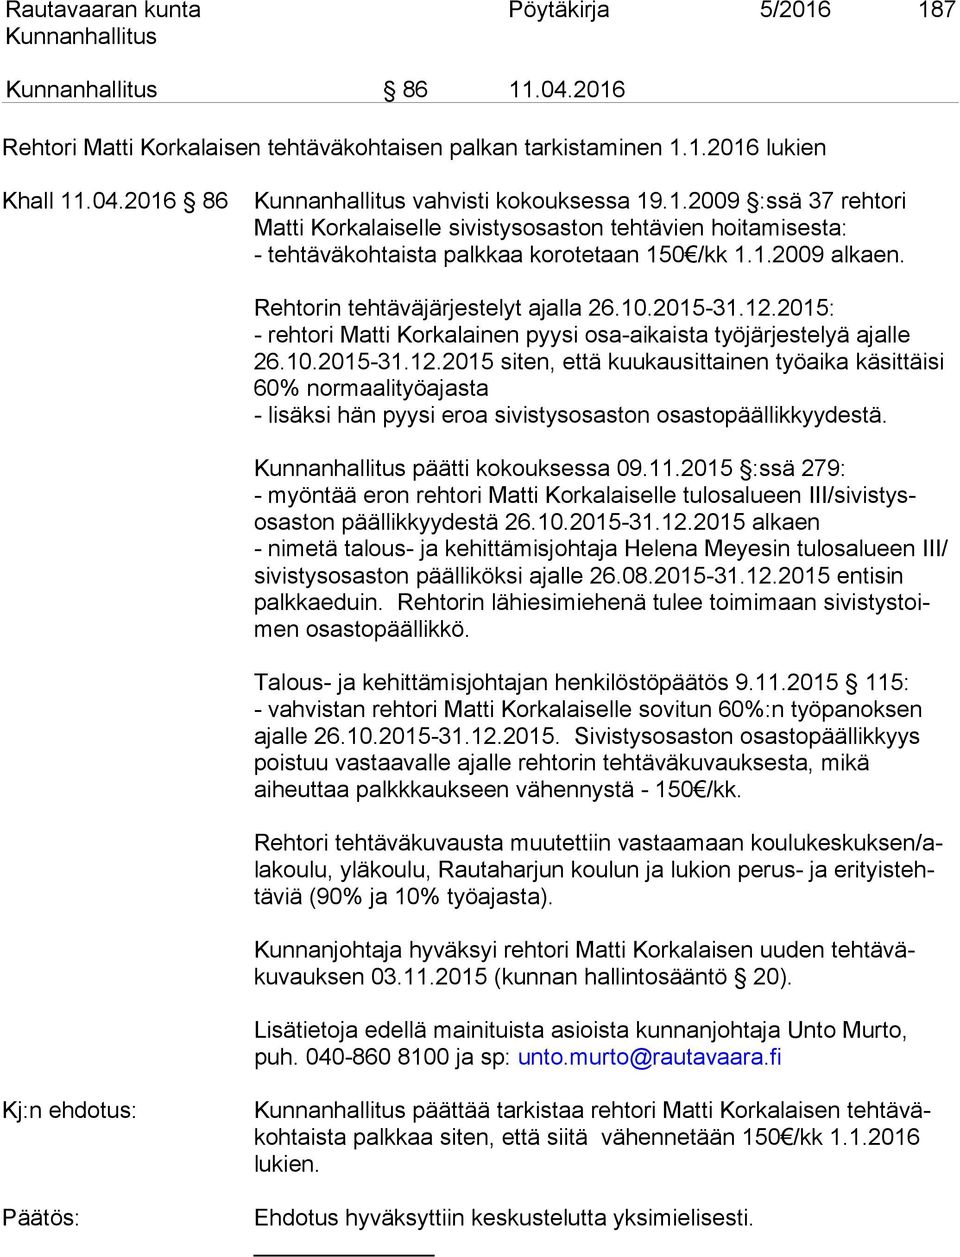 2015: - rehtori Matti Korkalainen pyysi osa-aikaista työjärjestelyä ajalle 26.10.2015-31.12.